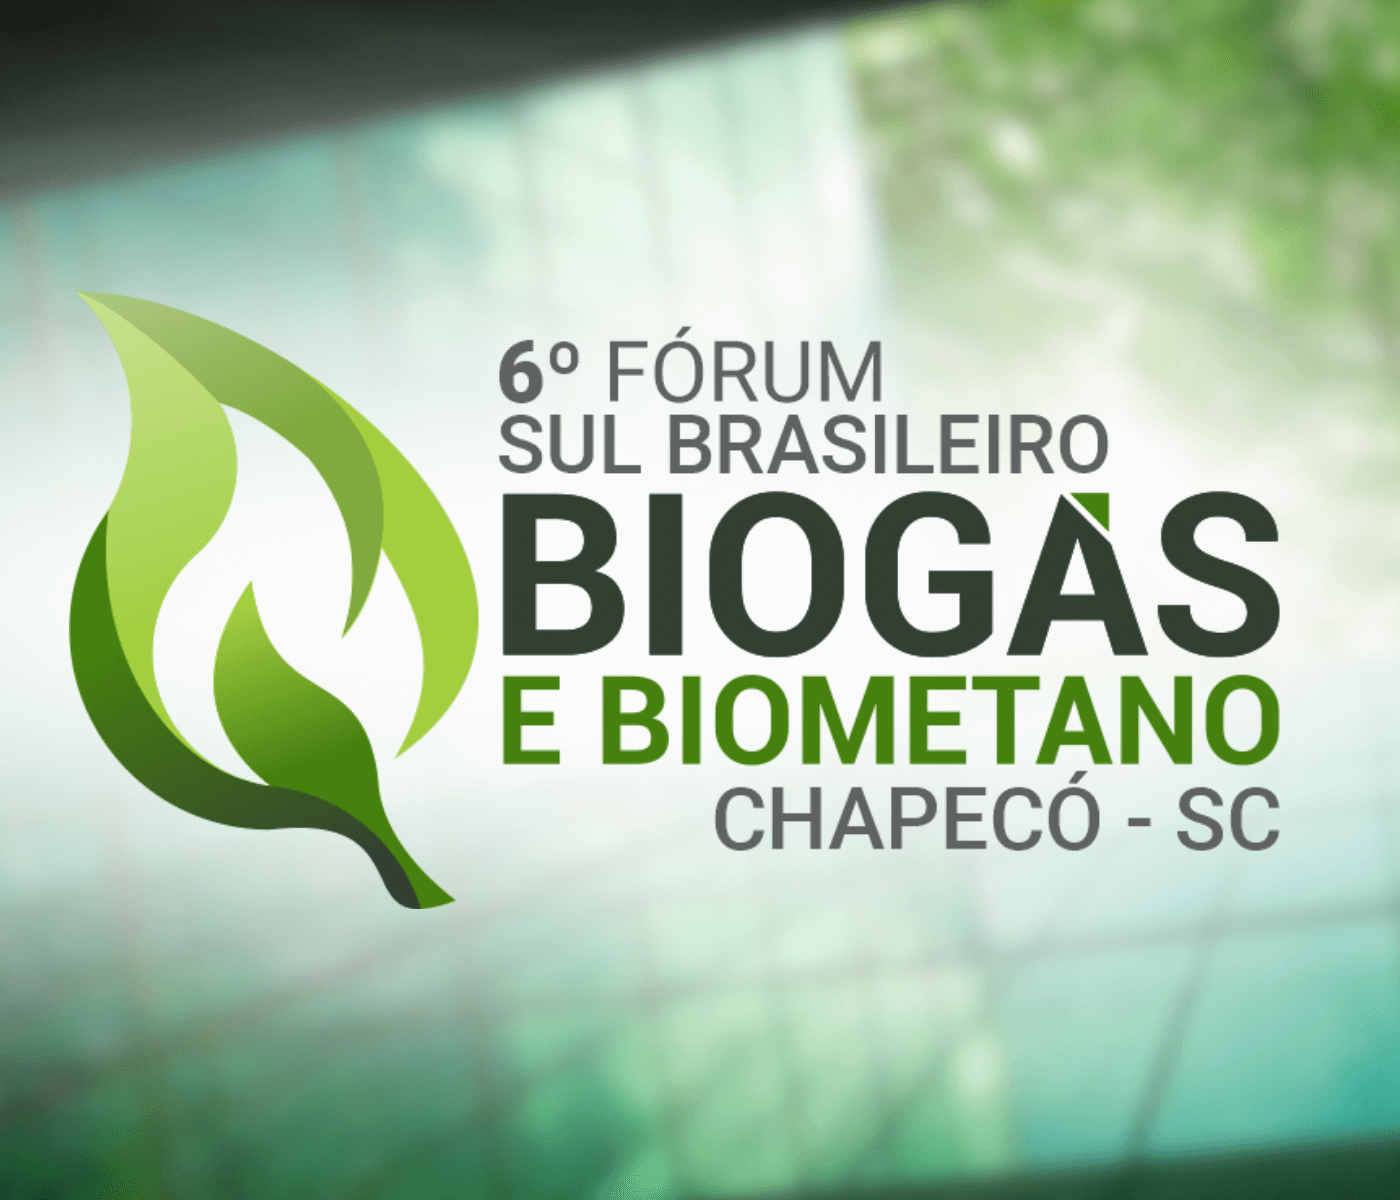 6º Fórum Sul Brasileiro de Biogás e Biometano vai ocorrer em Chapecó